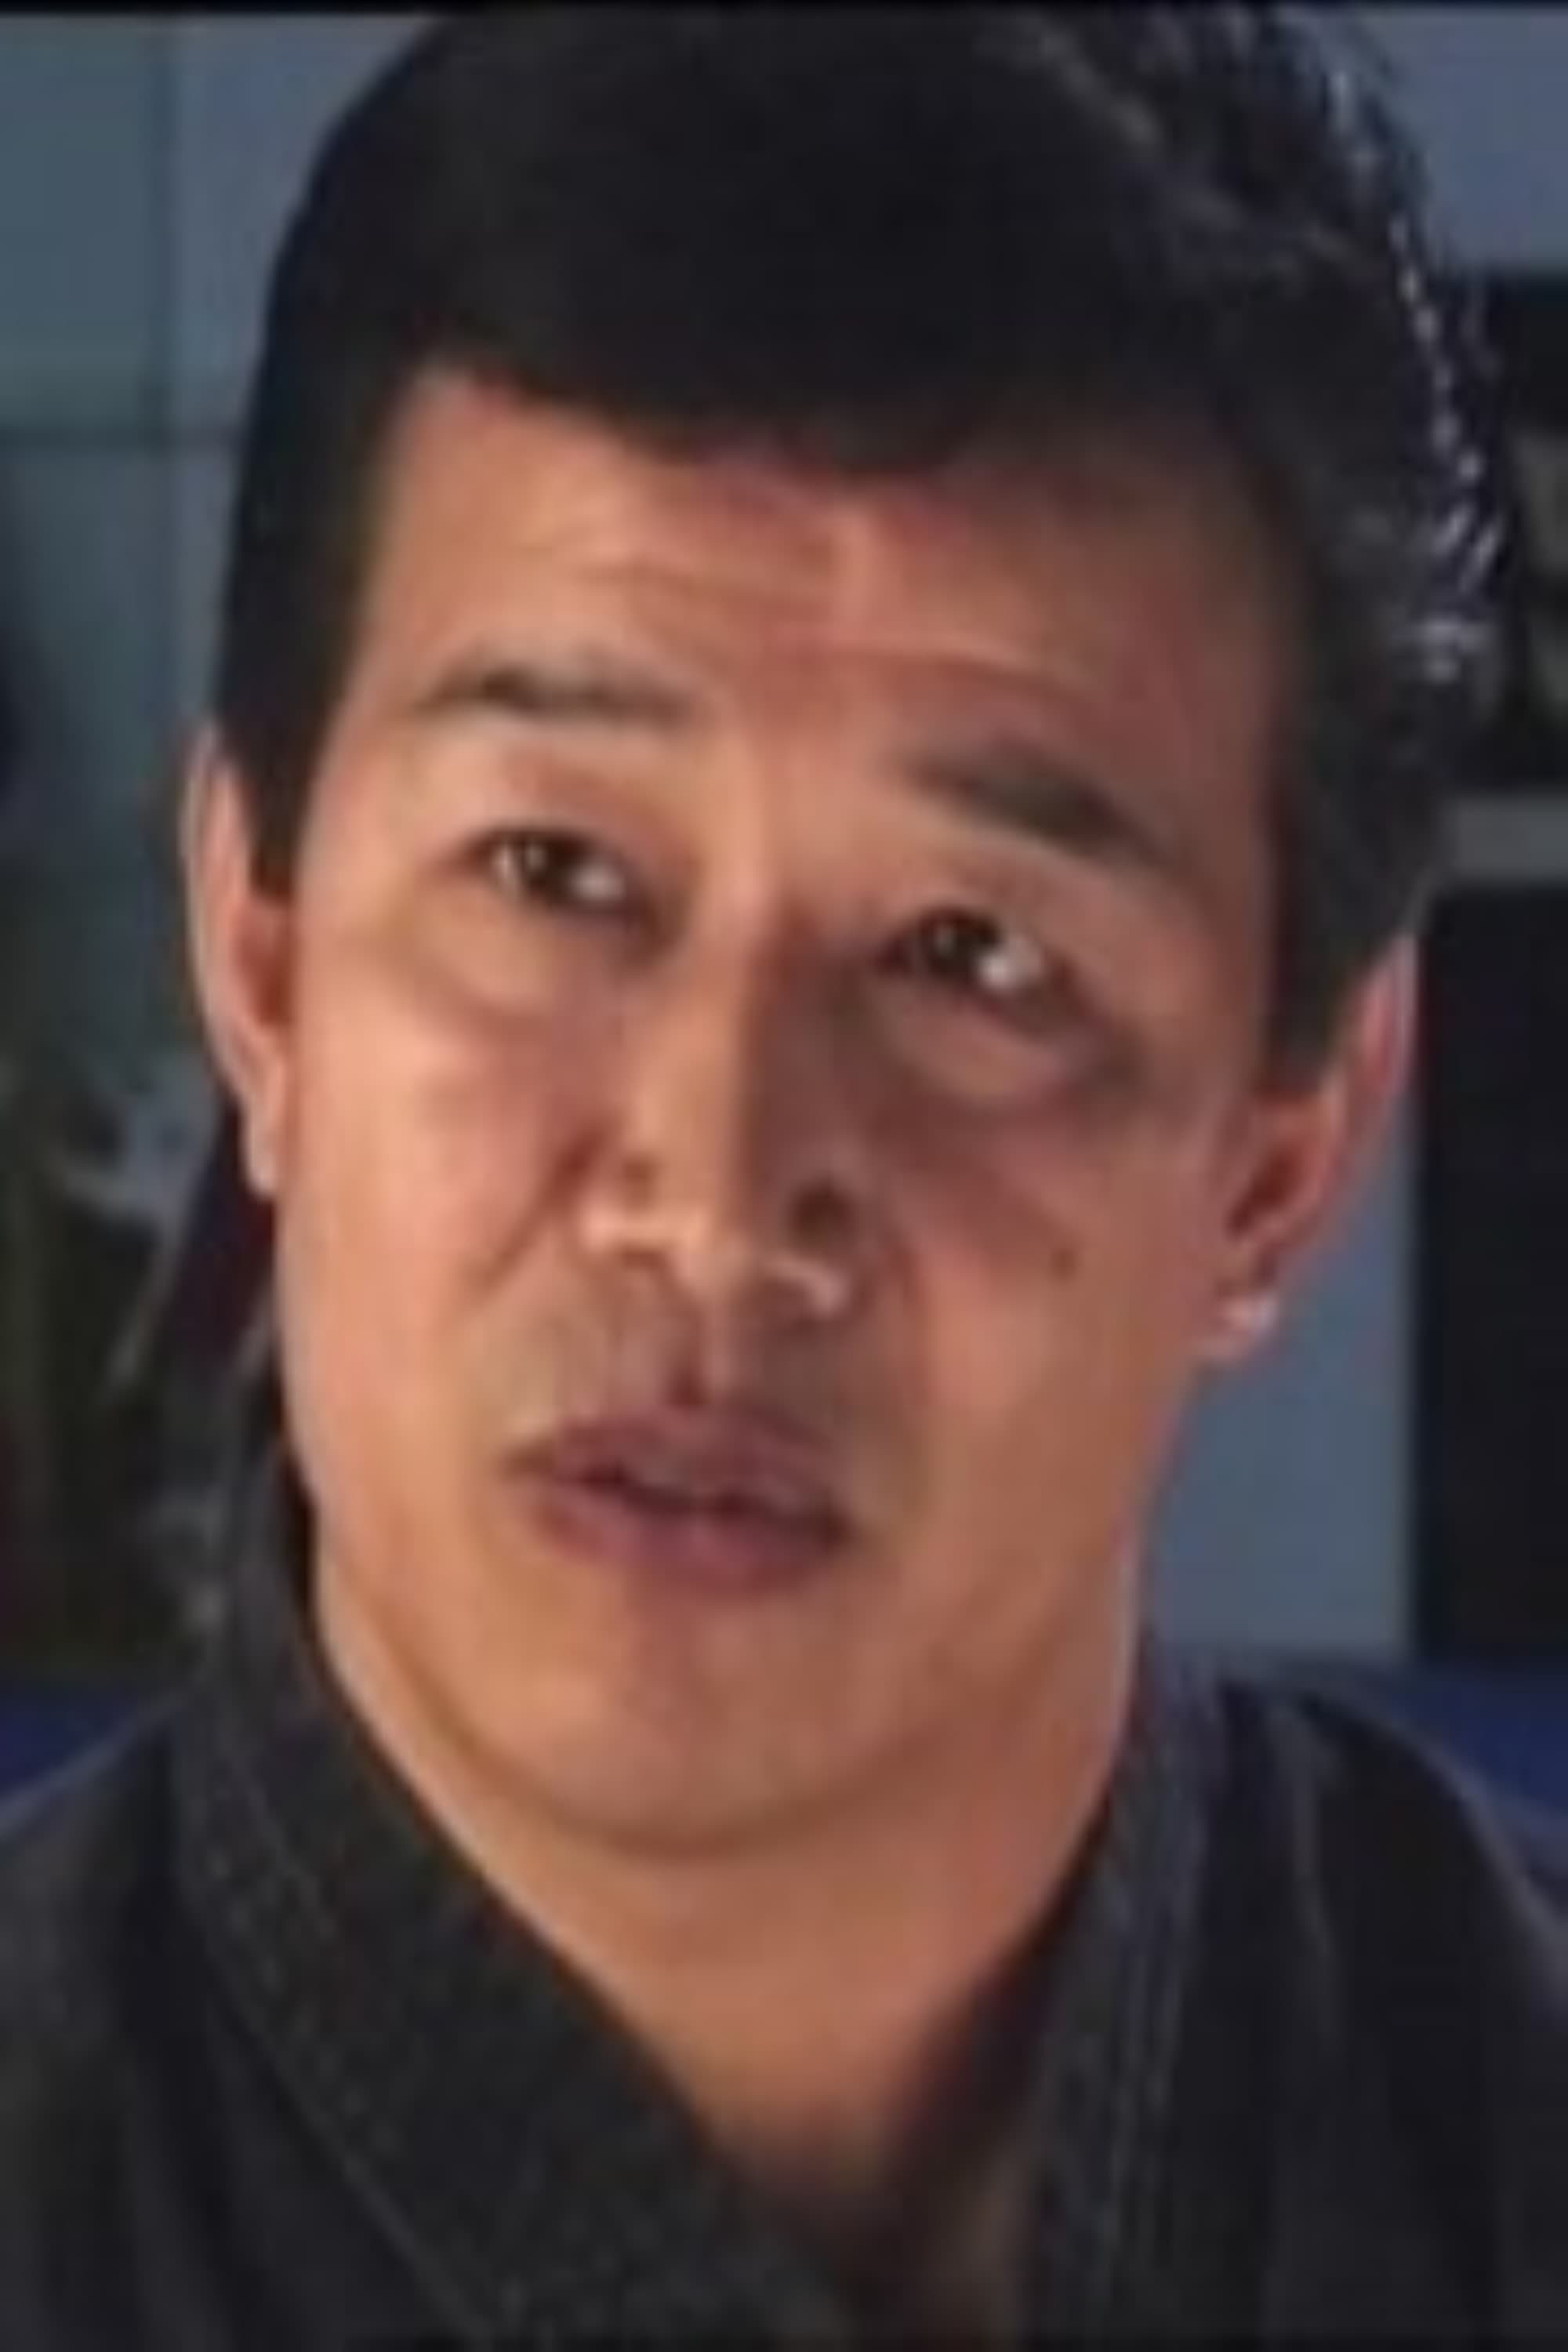 Dorian Tan Tao-Liang | Escaped Convict #1